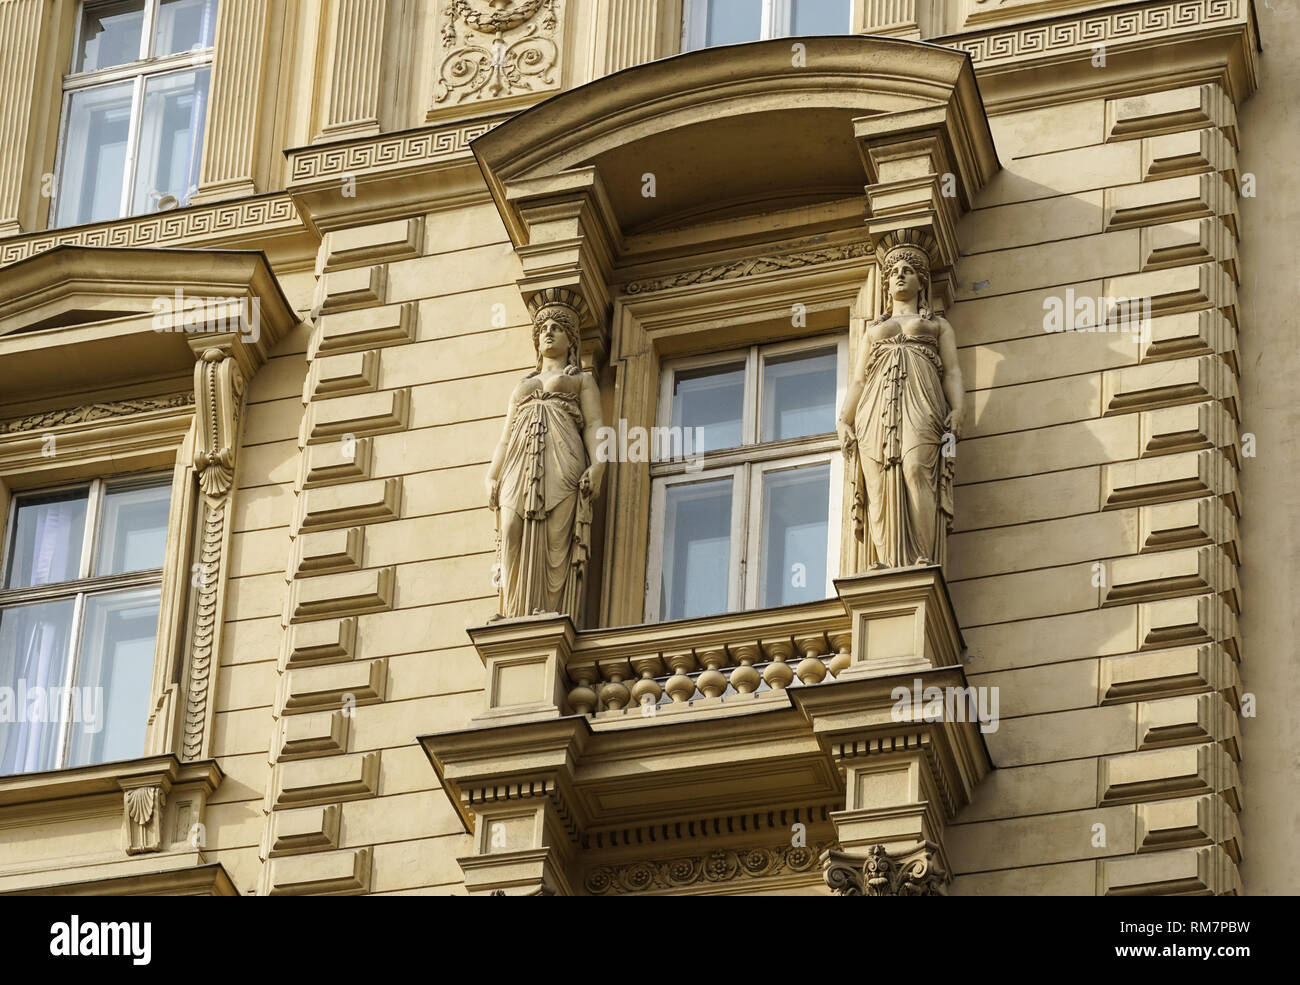 Les détails architecturaux sur les bâtiments à Vienne, Autriche Banque D'Images